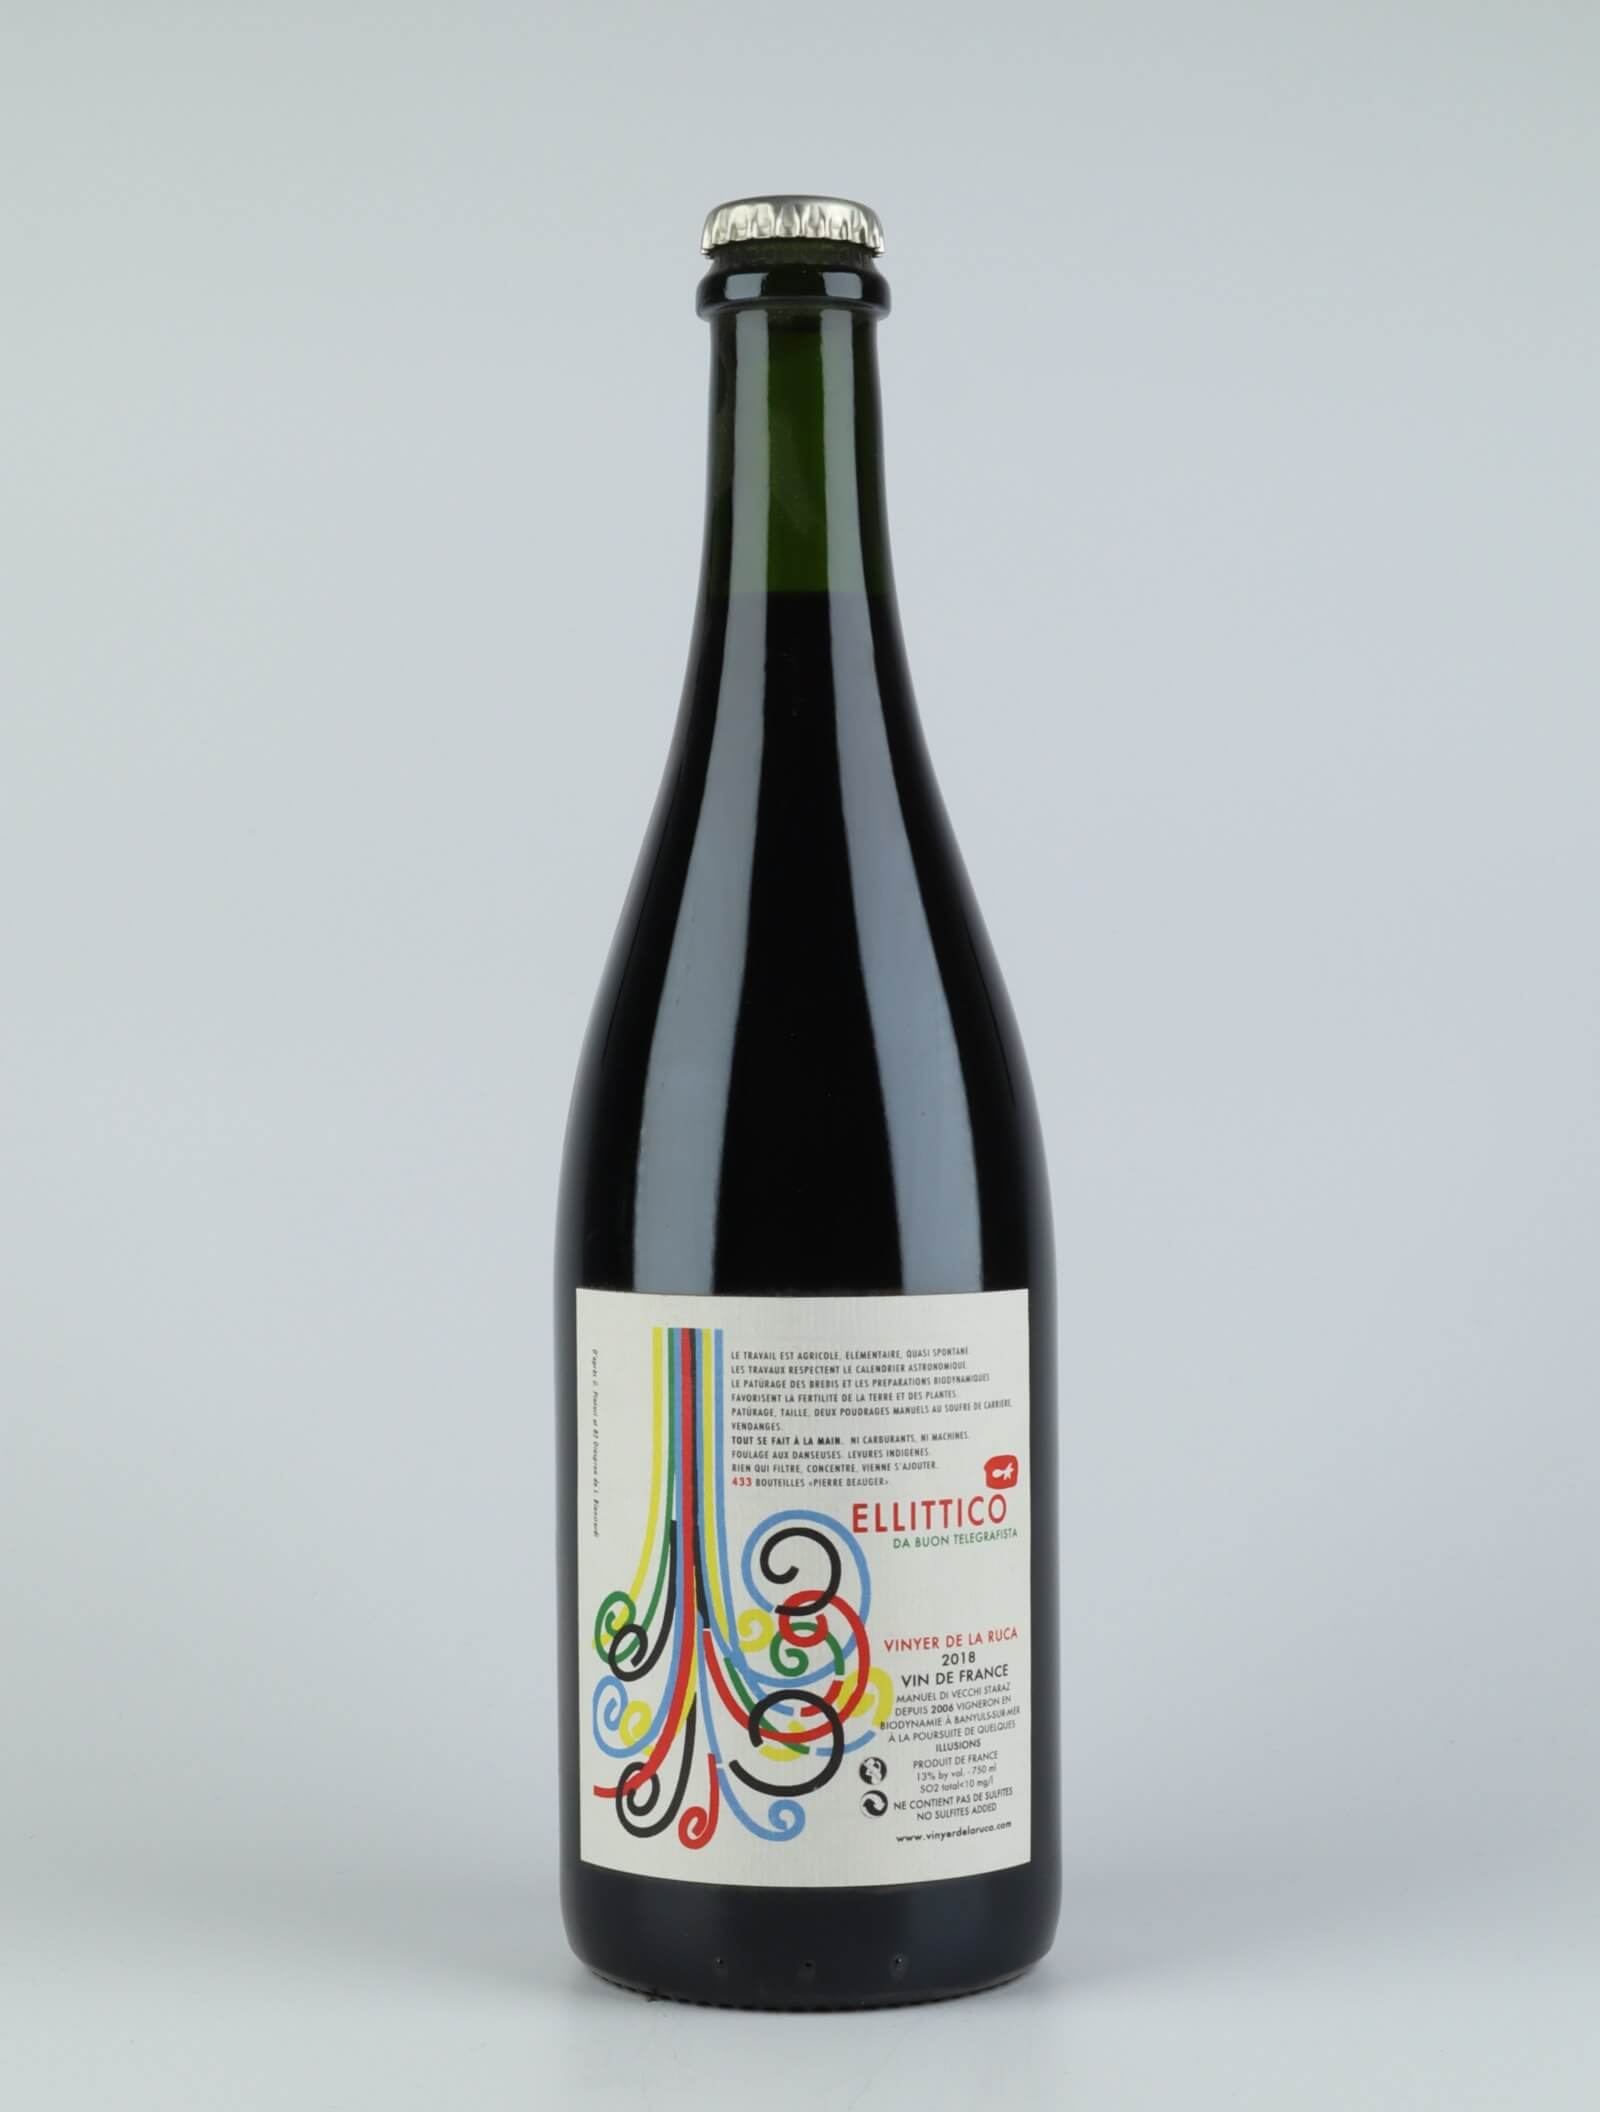 En flaske 2018 Ellittico Rødvin fra Vinyer de la Ruca, Rousillon i Frankrig